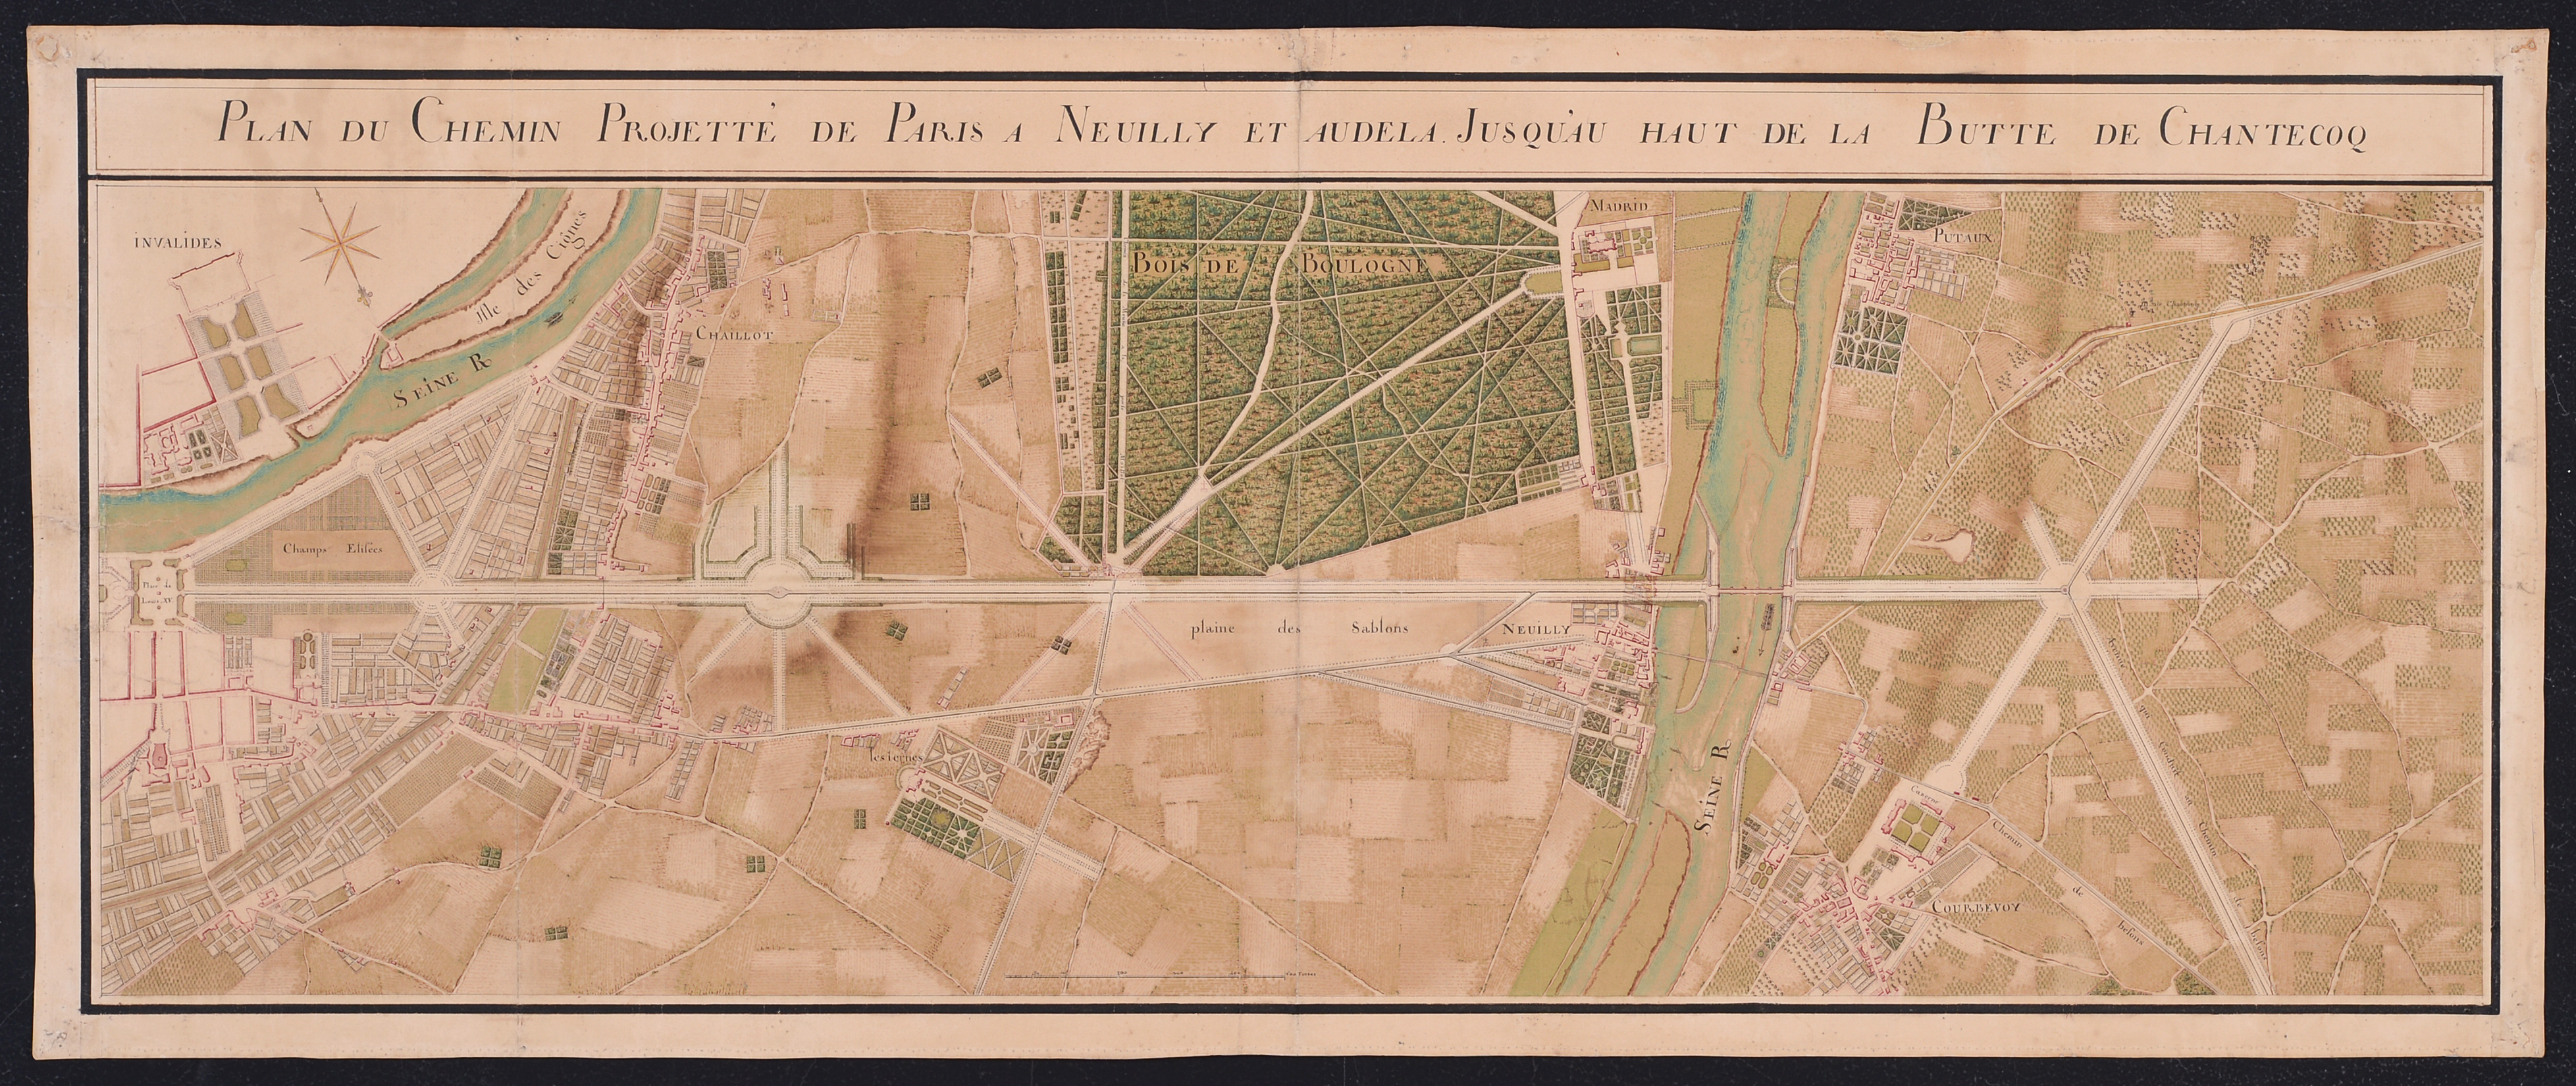 Plan du Chemin Projetté de Paris à Neuilly et audela Jusqu'au Haut de la Butte de Chantecoq